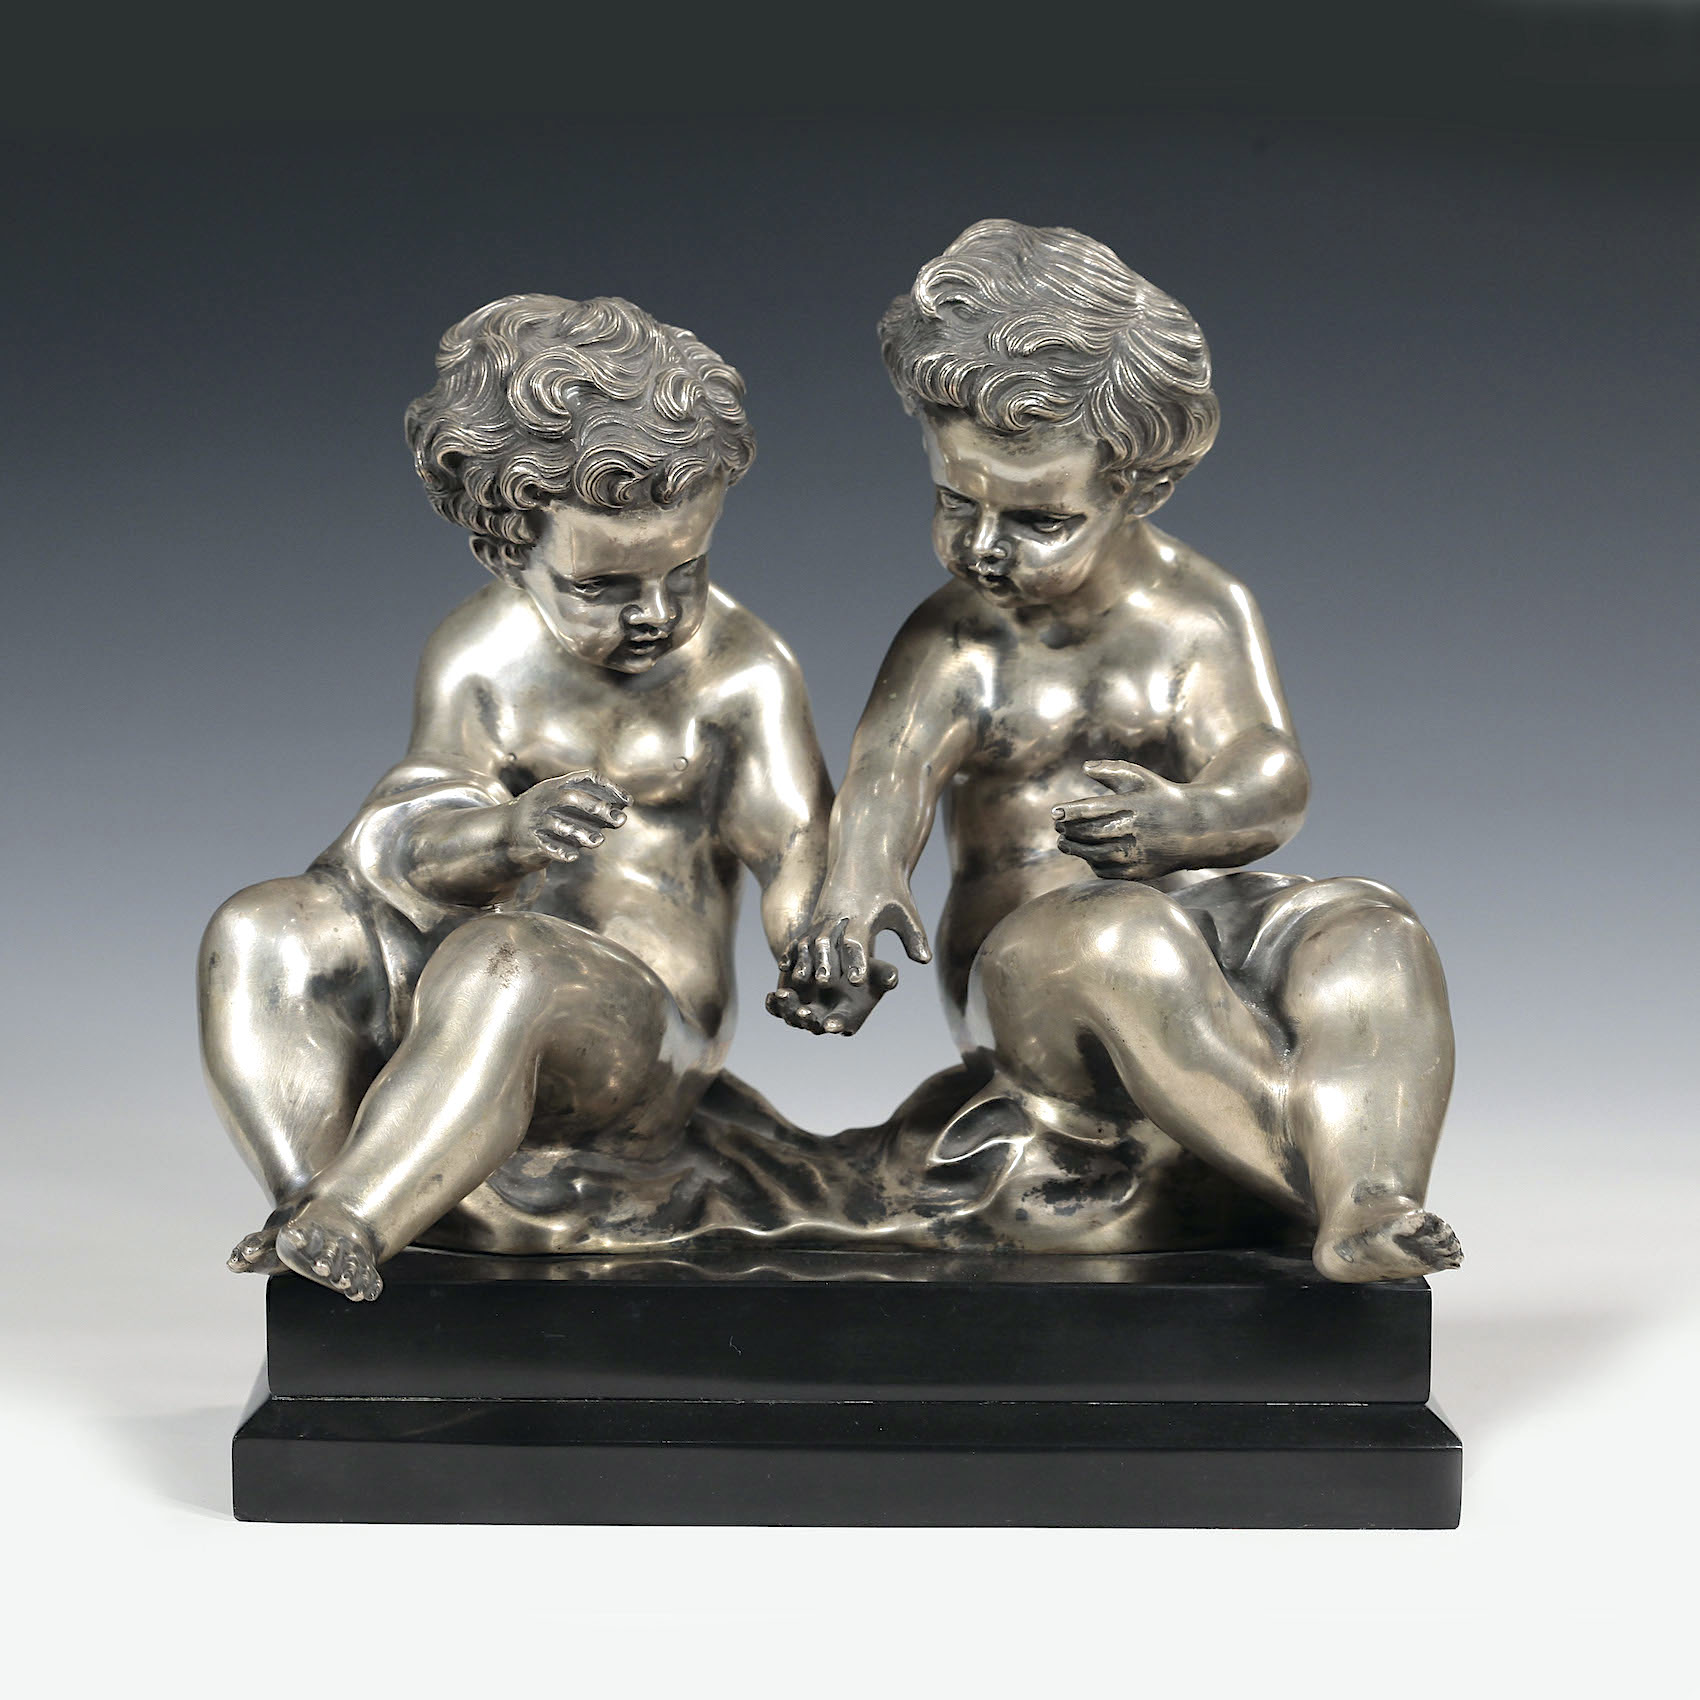 Скульптурная композиция из серебра «Любовь и дружба». Автор – Луиджи де Лука (Luigi de Luca)